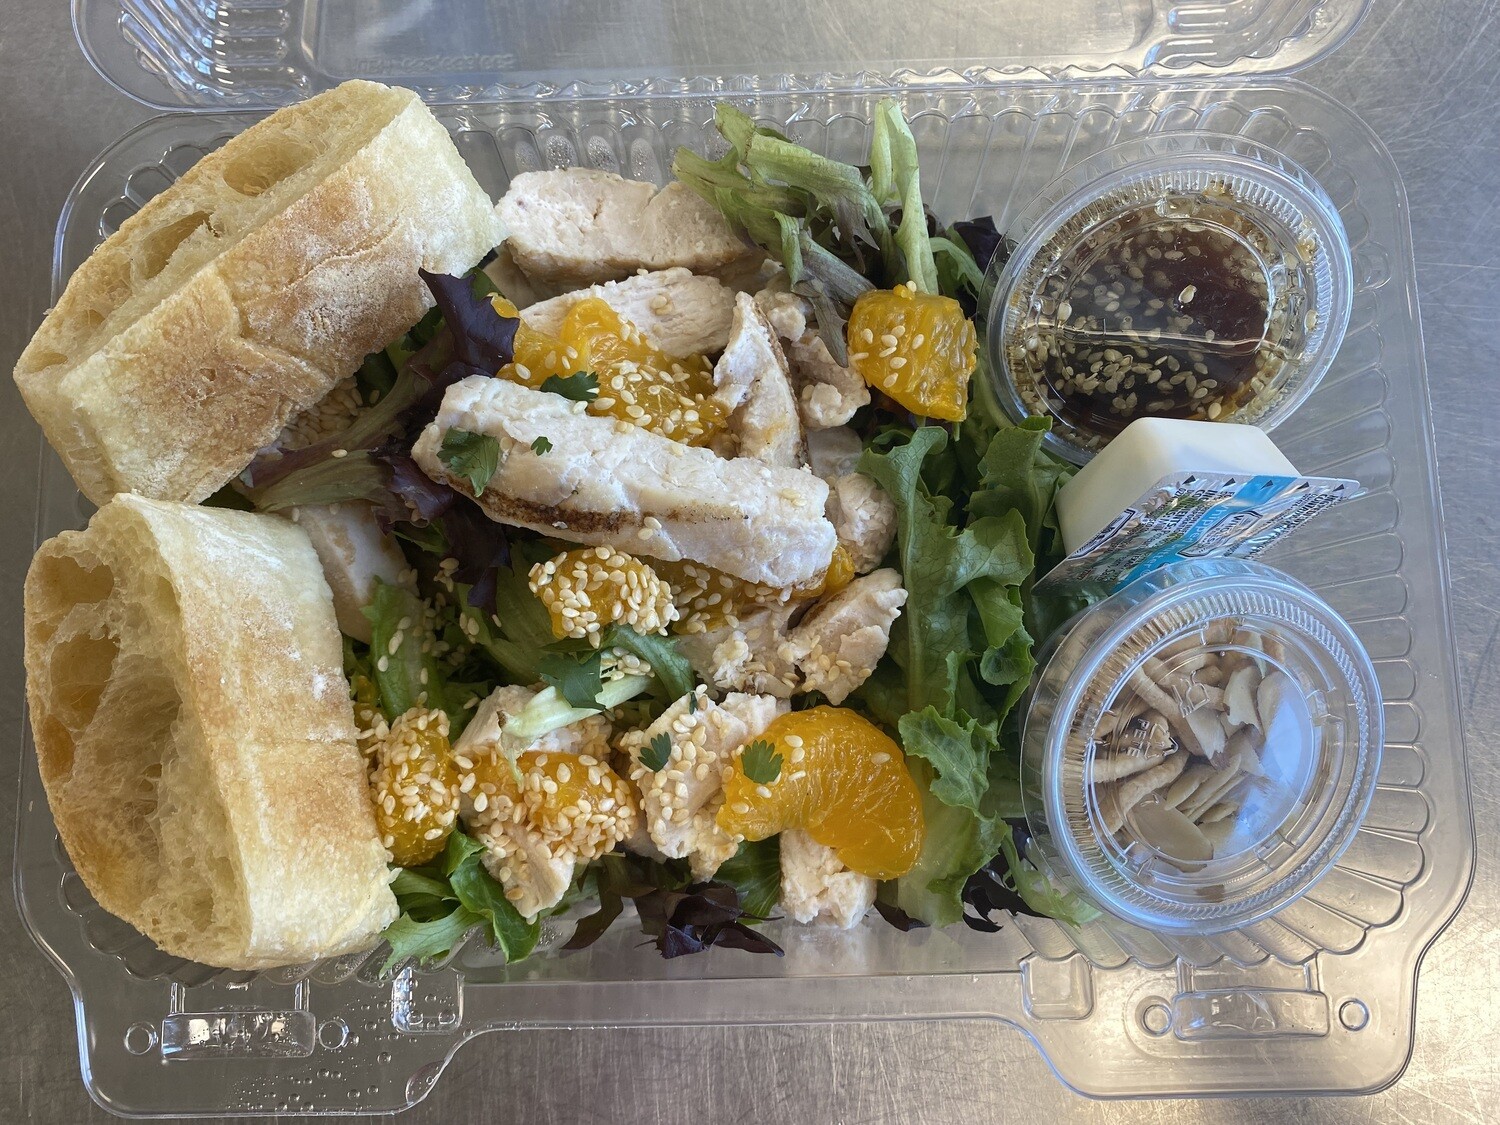 Lunch Salad - Sesame Chicken